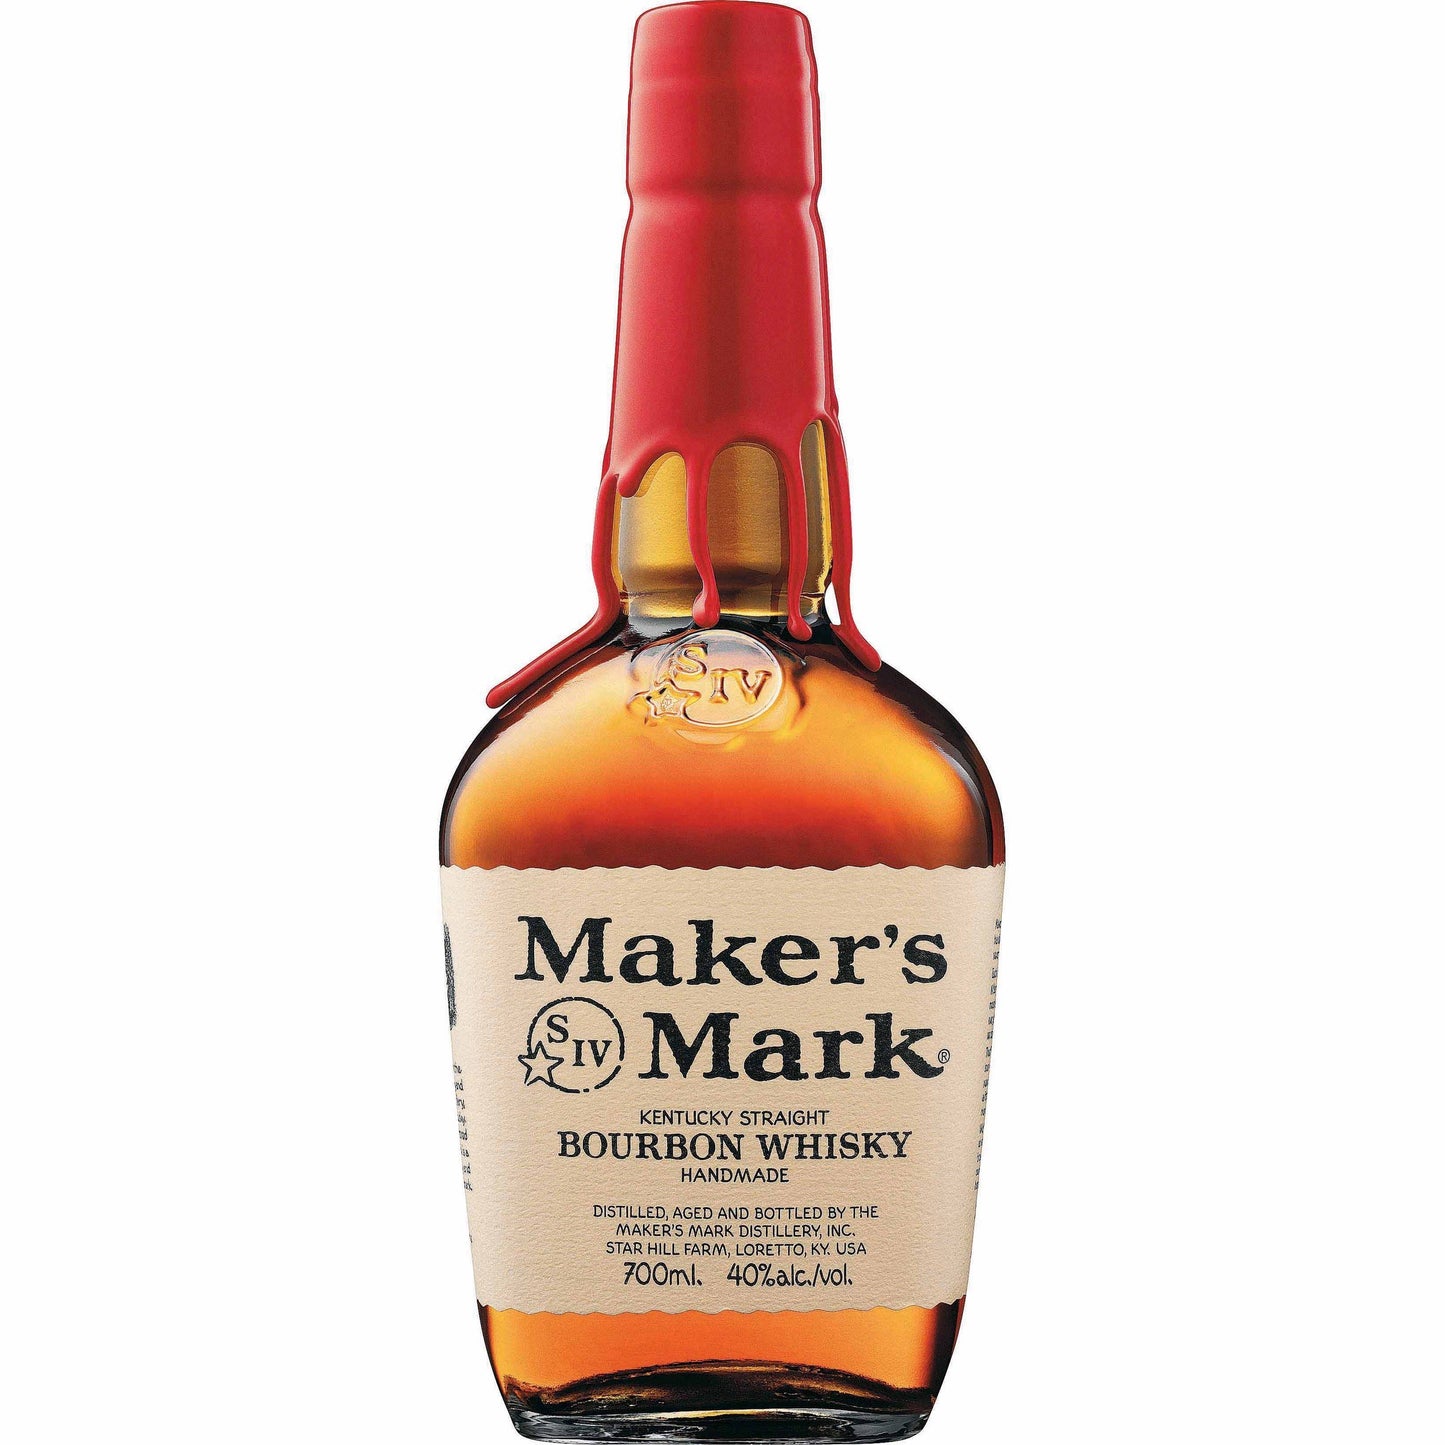 Makers Mark Kentucky Bourbon Whisky bottle 700ml